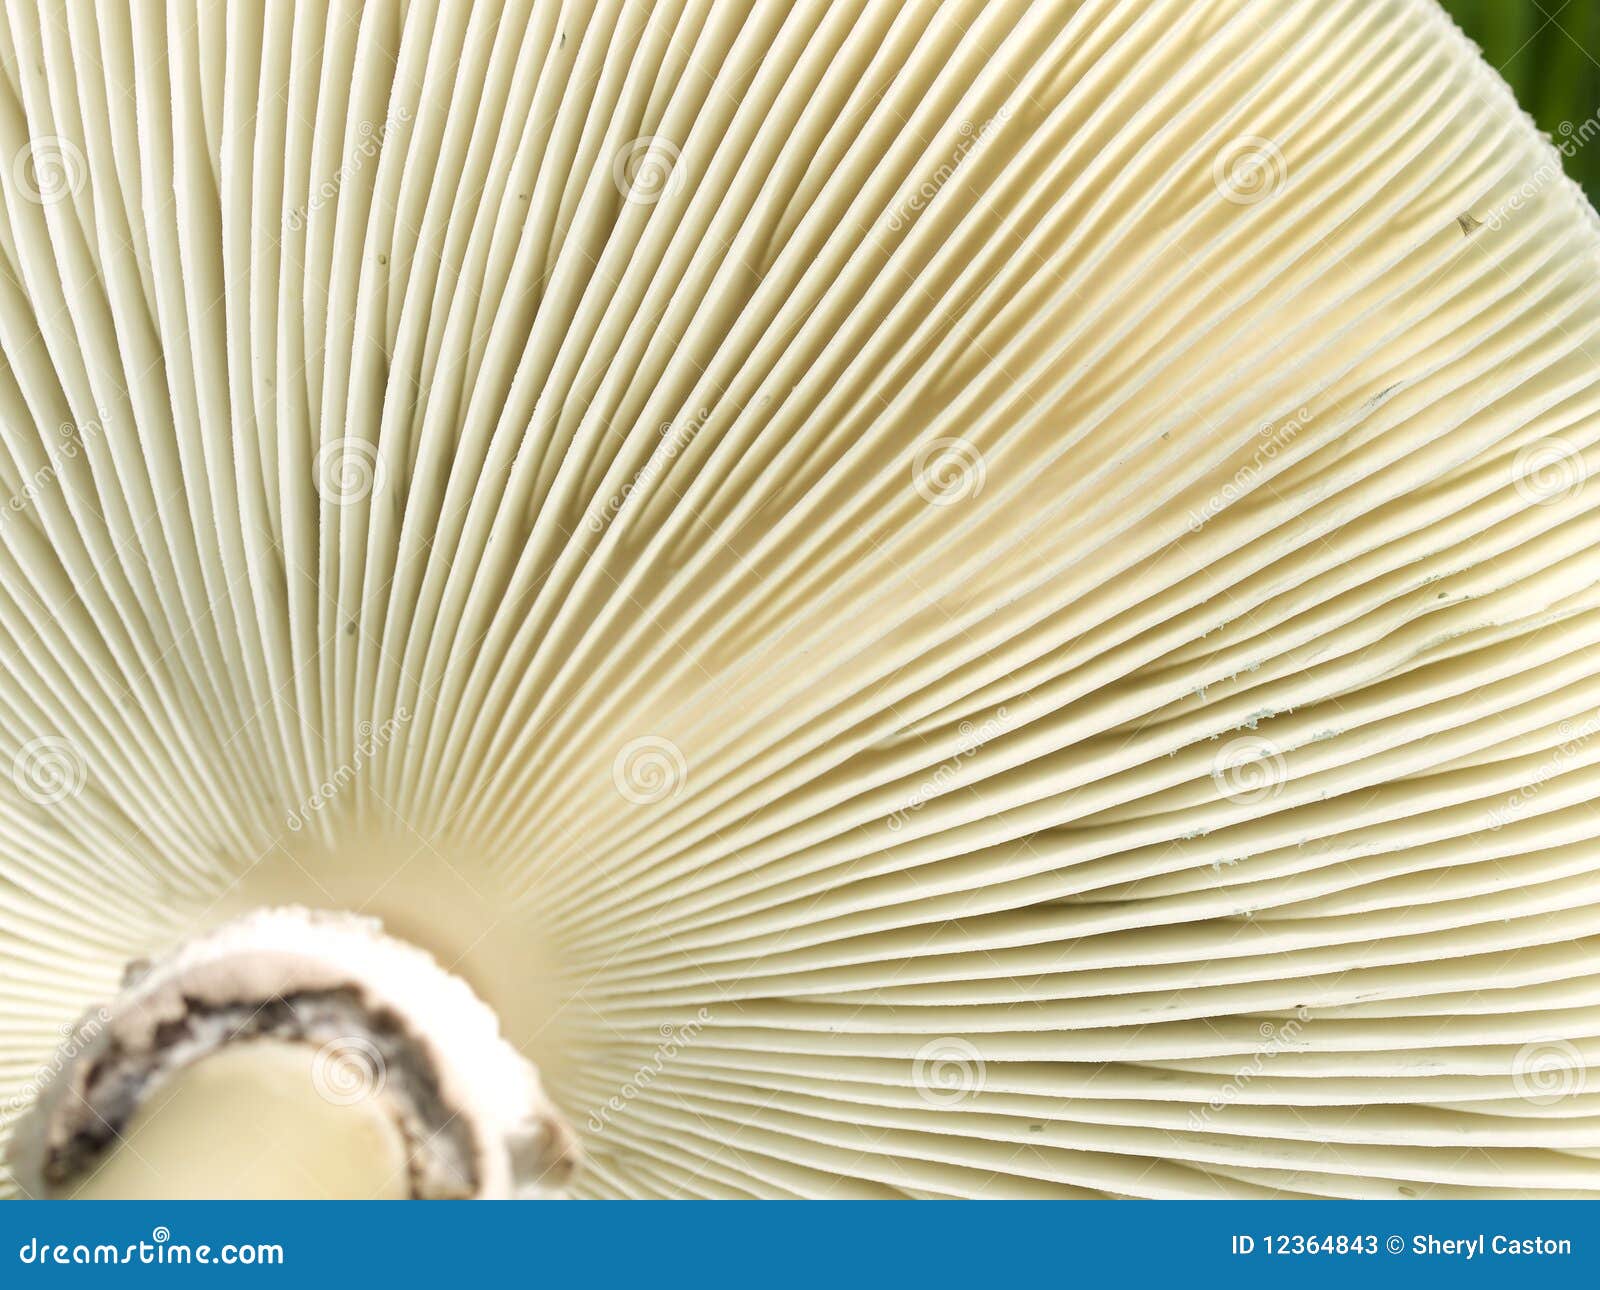 нижняя сторона текстуры гриба жабр грибков. нижняя сторона текстуры гриба макроса жабр грибков